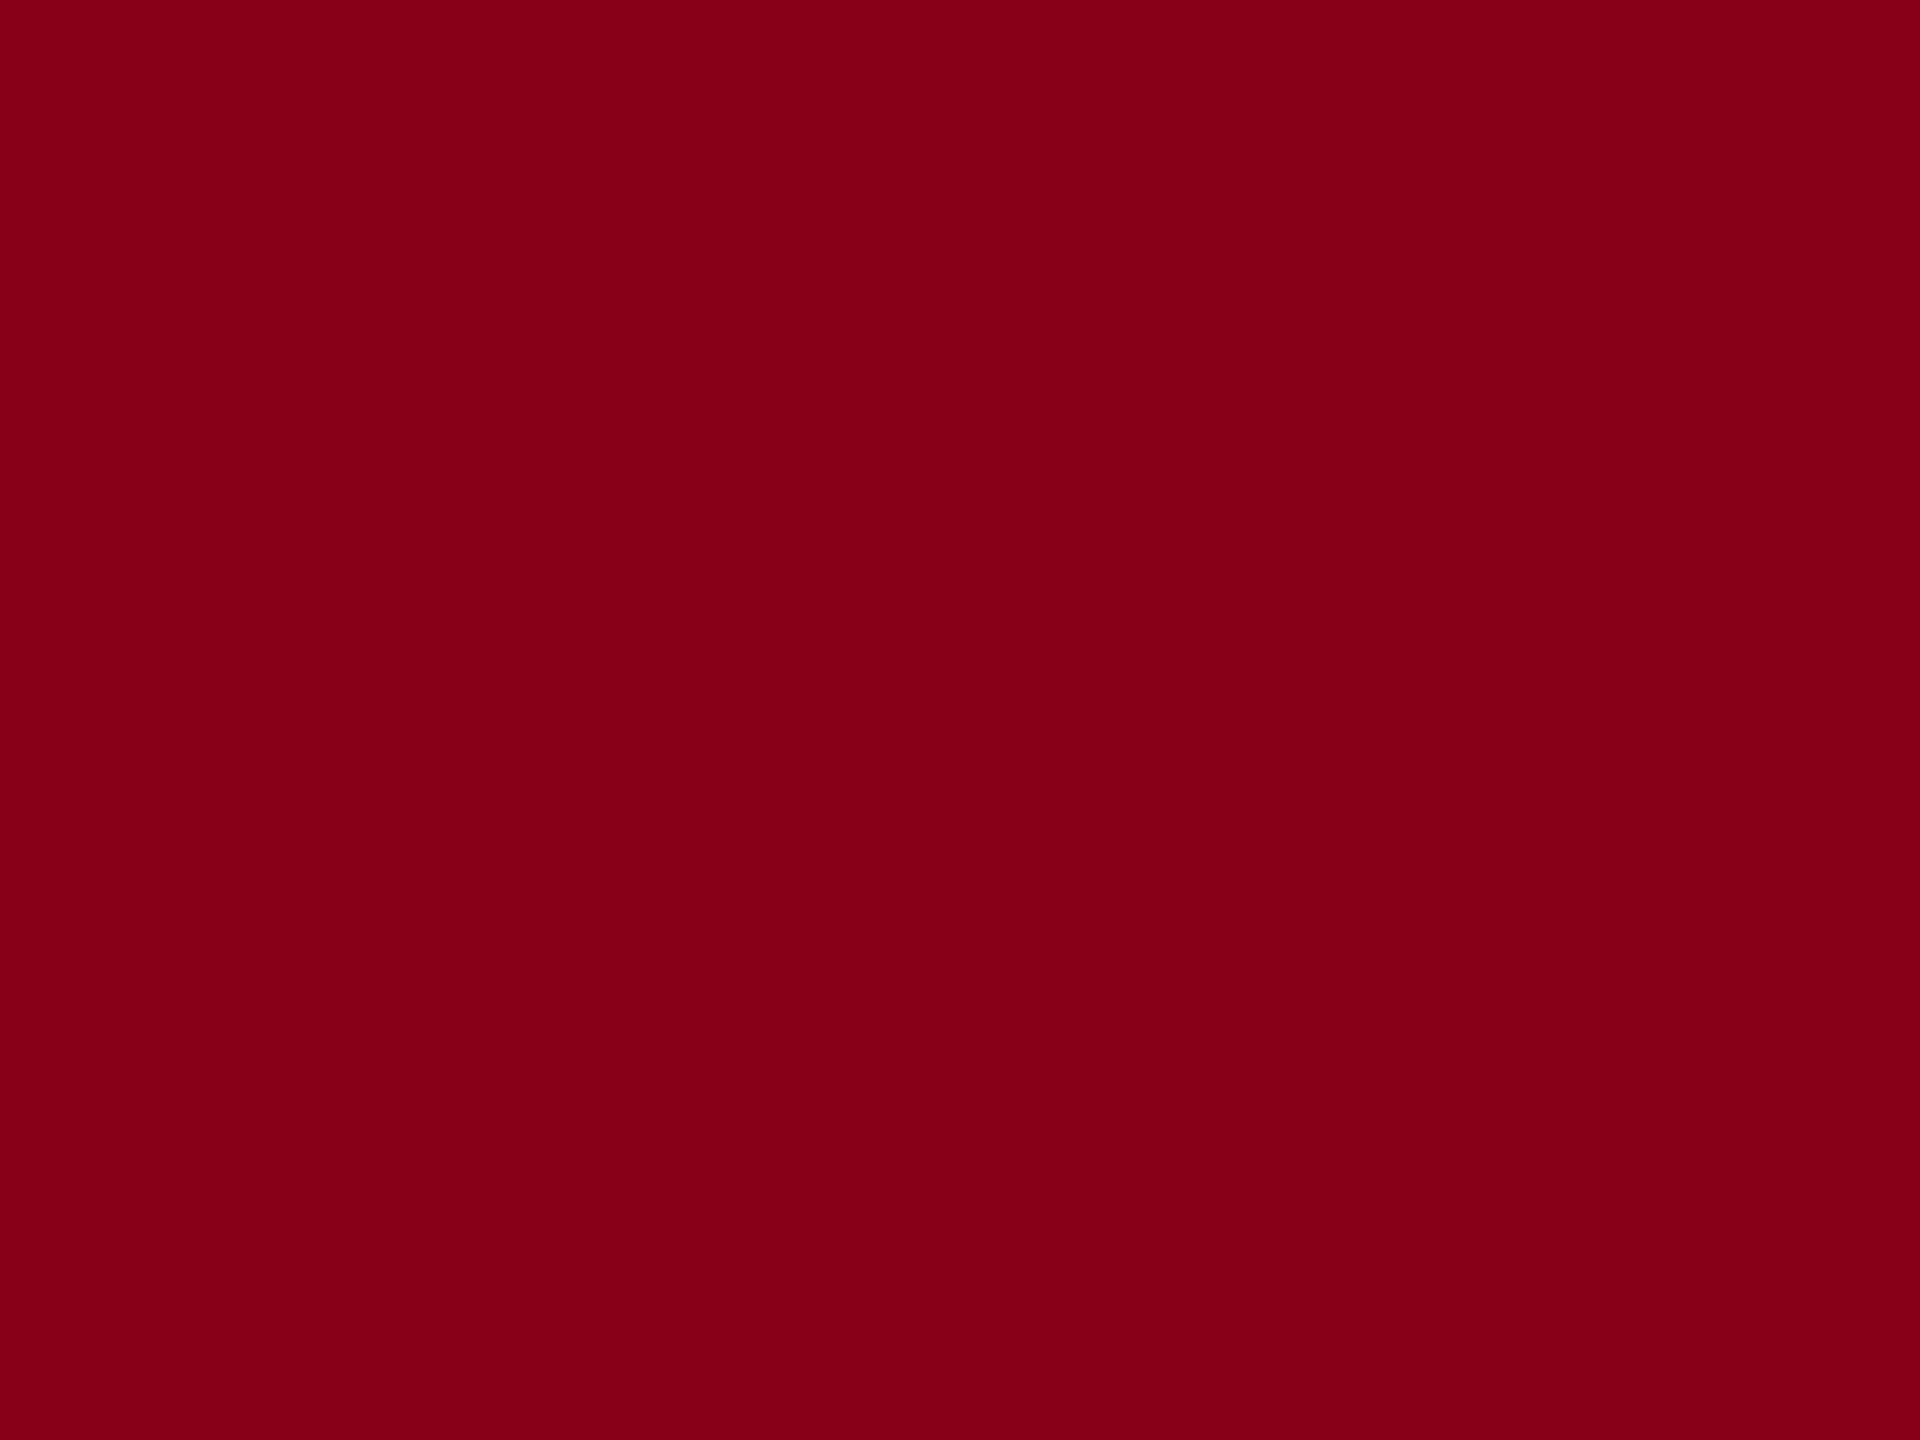 1920x1440 dark-red-background.jpg